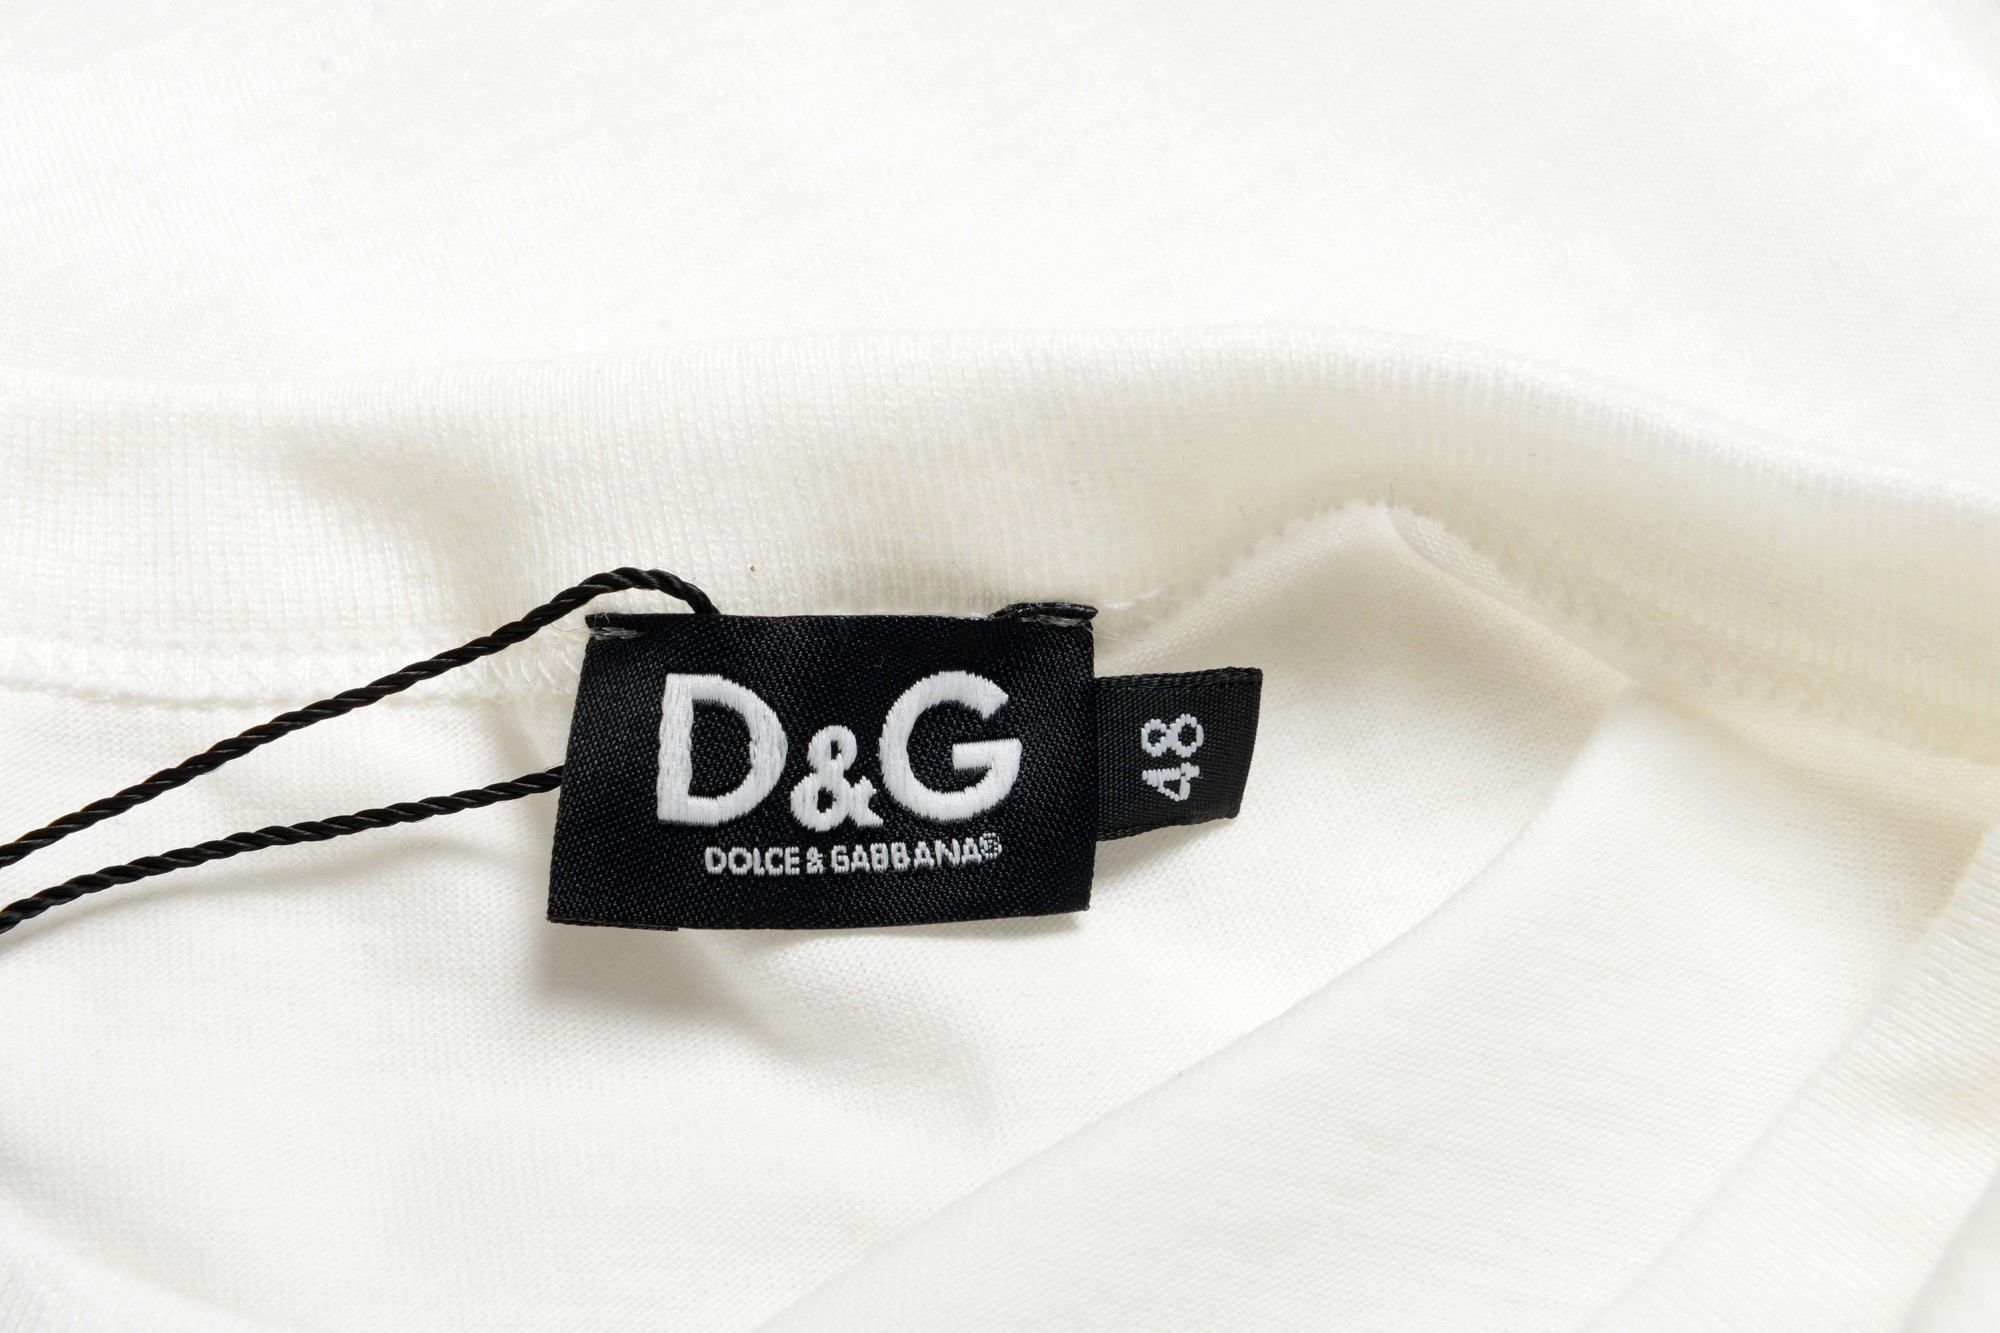 Details about   D&G Dolce&Gabbana T-Shirt Sweatshirt Man White 21N8A05JO0020 W0800 Sz7 MAKEOFFER 